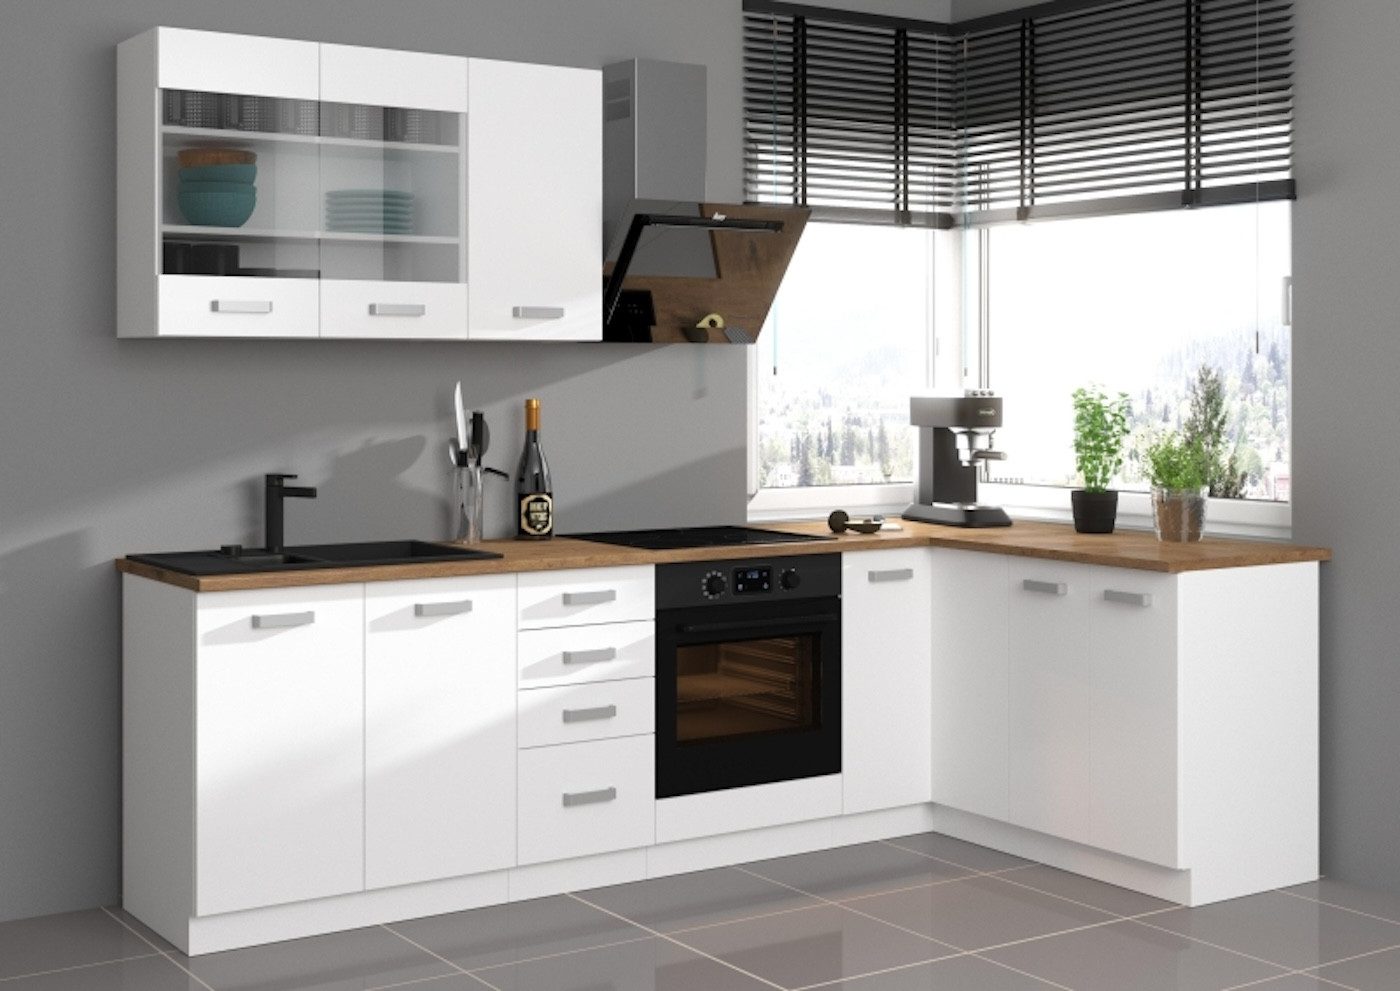 ROYAL24_MARKT Winkelküche - Dynamik für Ihr Zuhause, Edles Material - Zeitlos - Elegant.